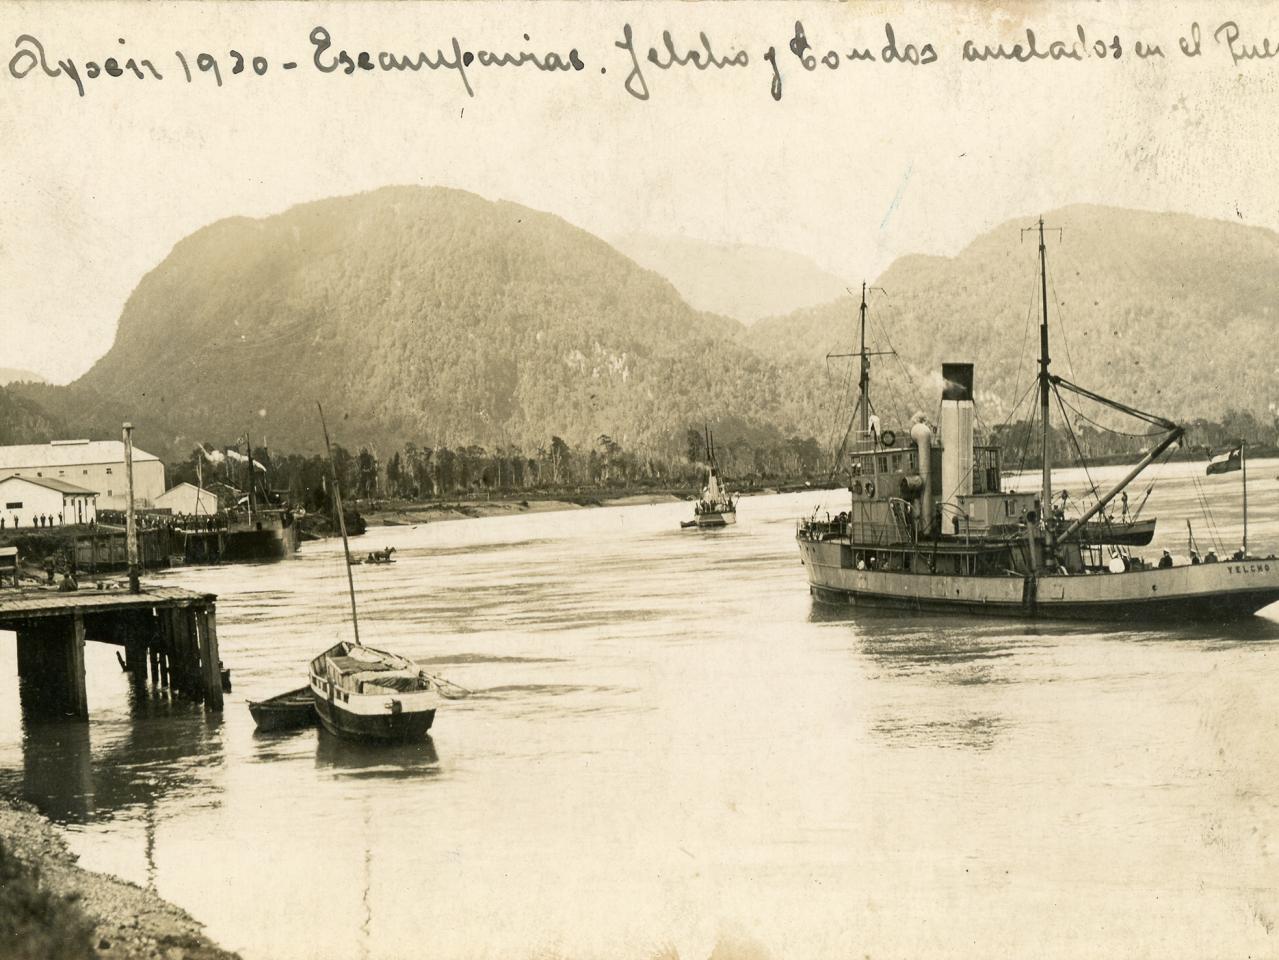 Puerto de Aysén visitado por embarcaciones de la Armada de Chile (1930)